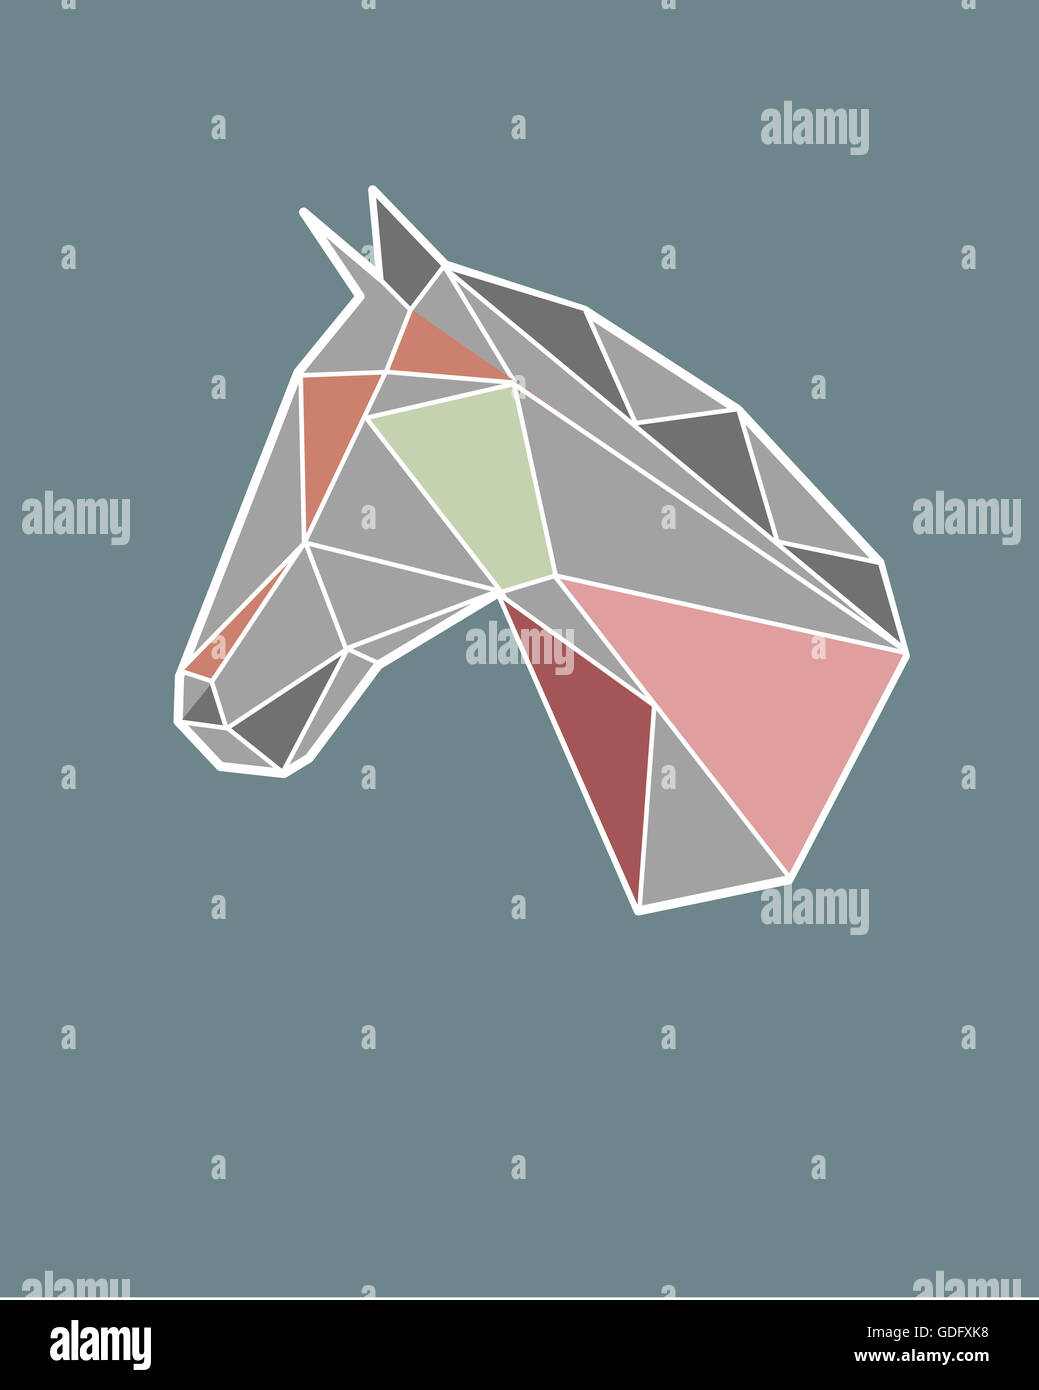 Illustration à la main ou d'un dessin d'une tête de cheval géométrique Banque D'Images